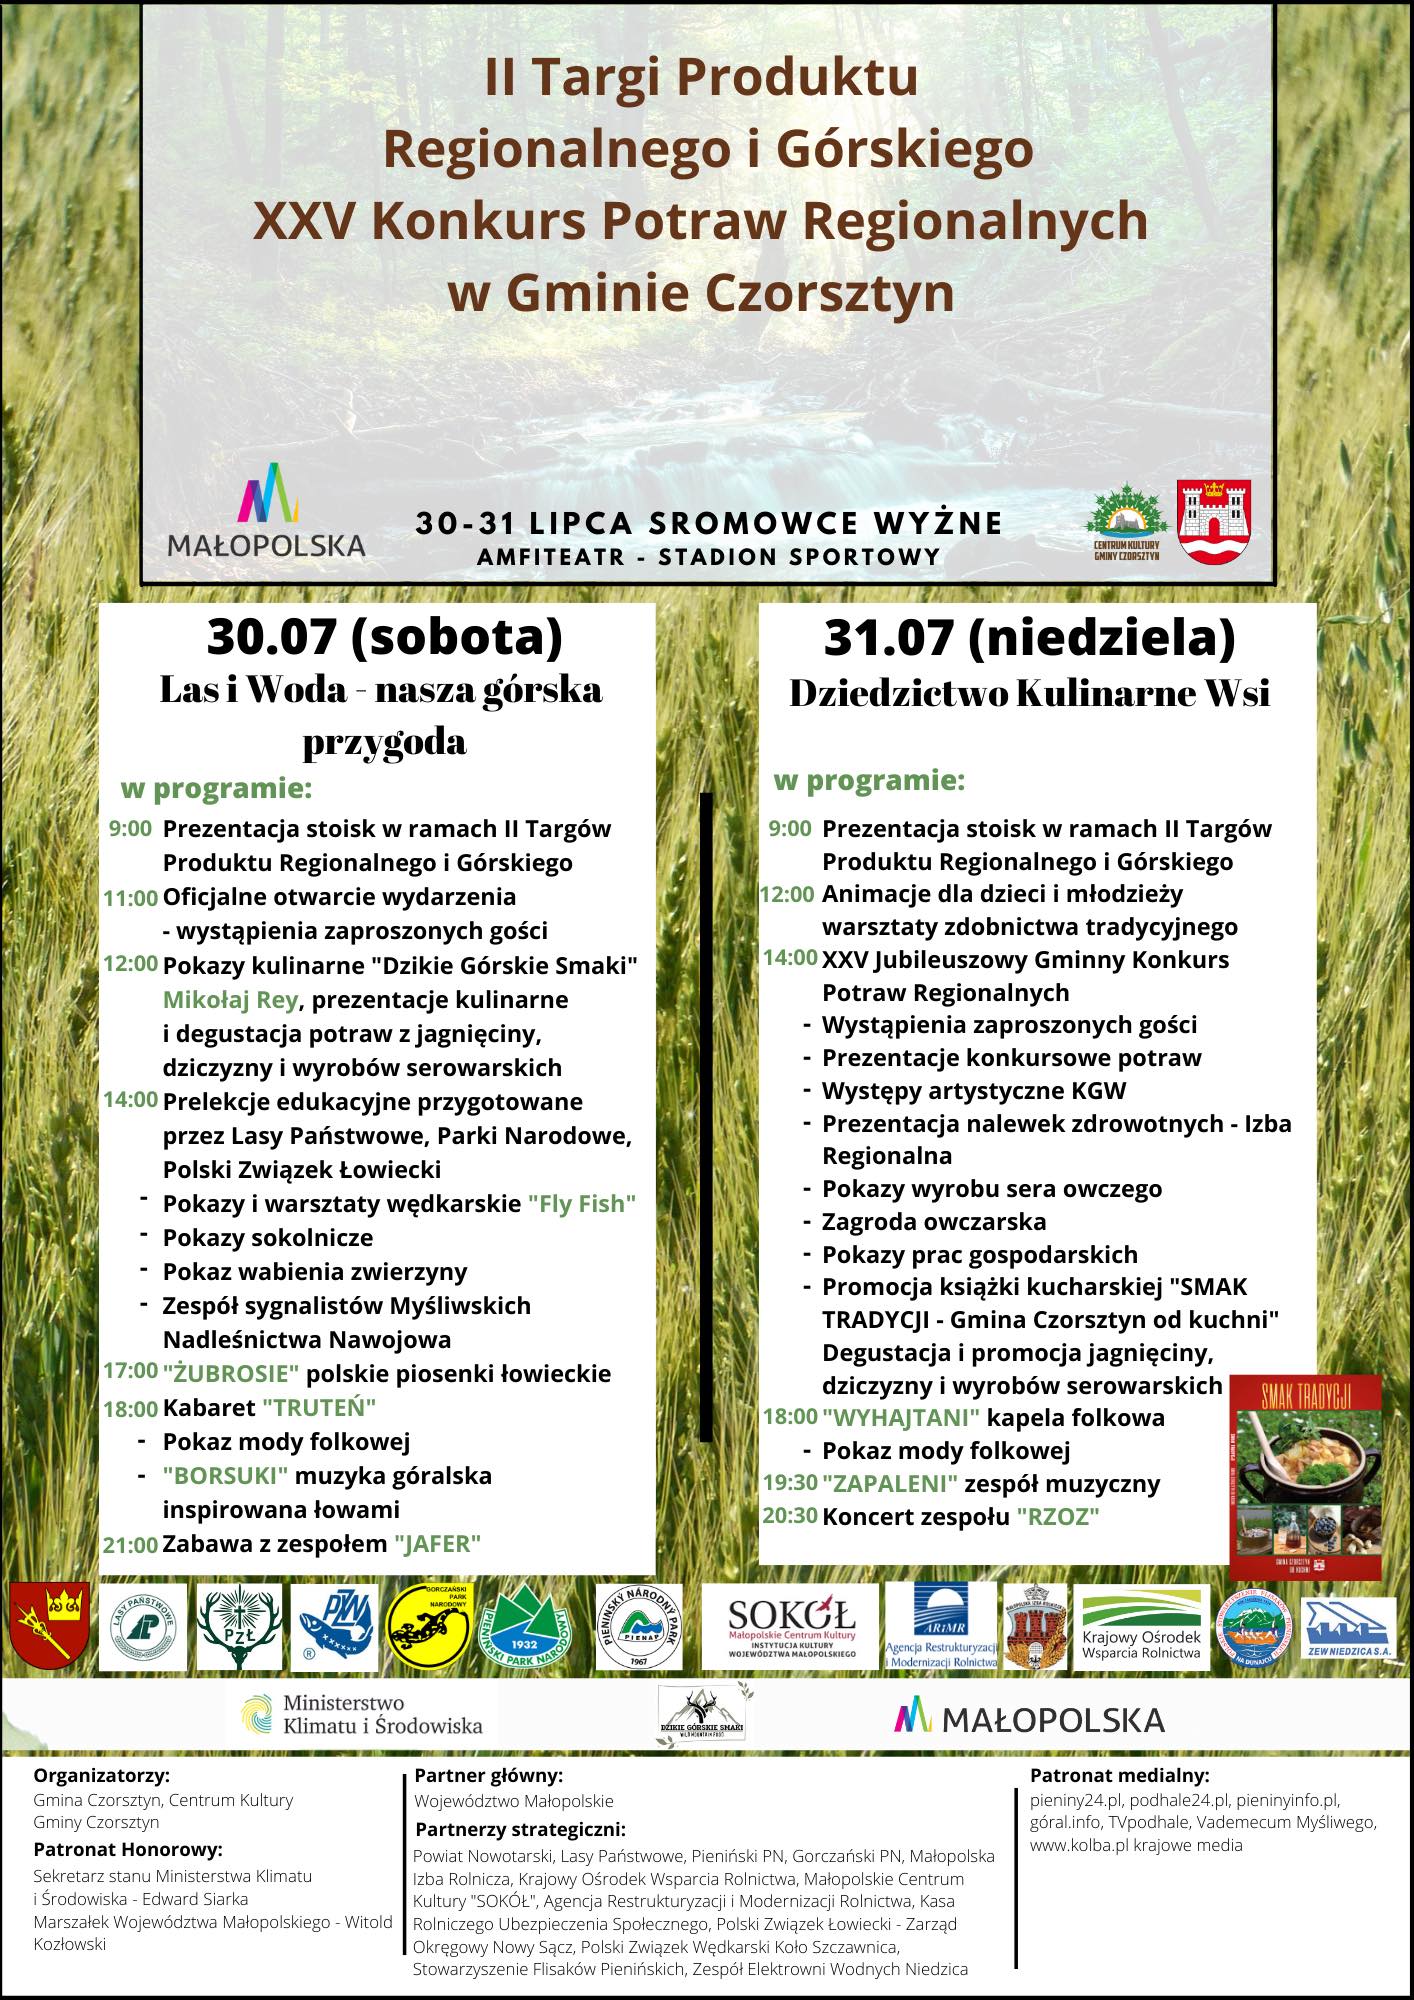 II Targi Produktu Regionalnego i Górskiego, XXV Konkurs Potraw Regionalnych w Gminie Czorsztyn